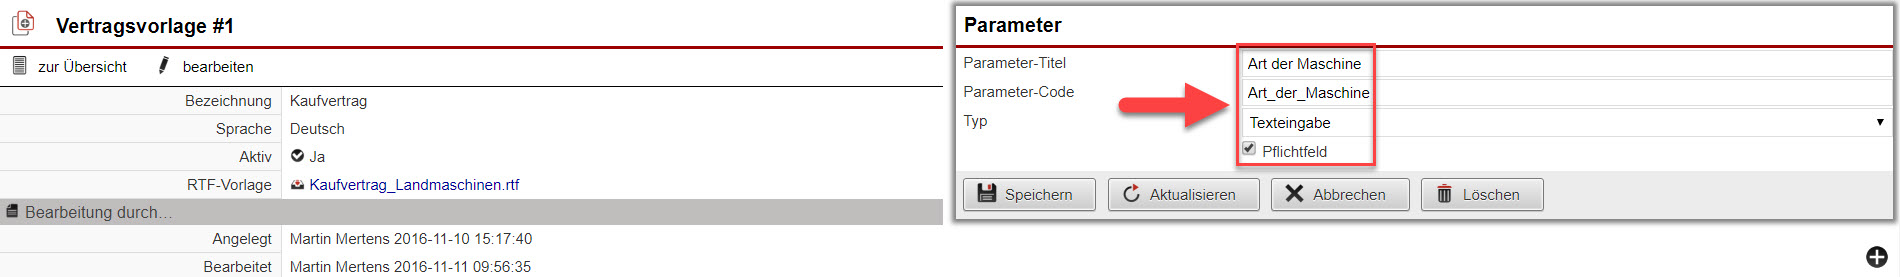 Screenshot Fenster Parameterdefinition der Vertragsvorlage